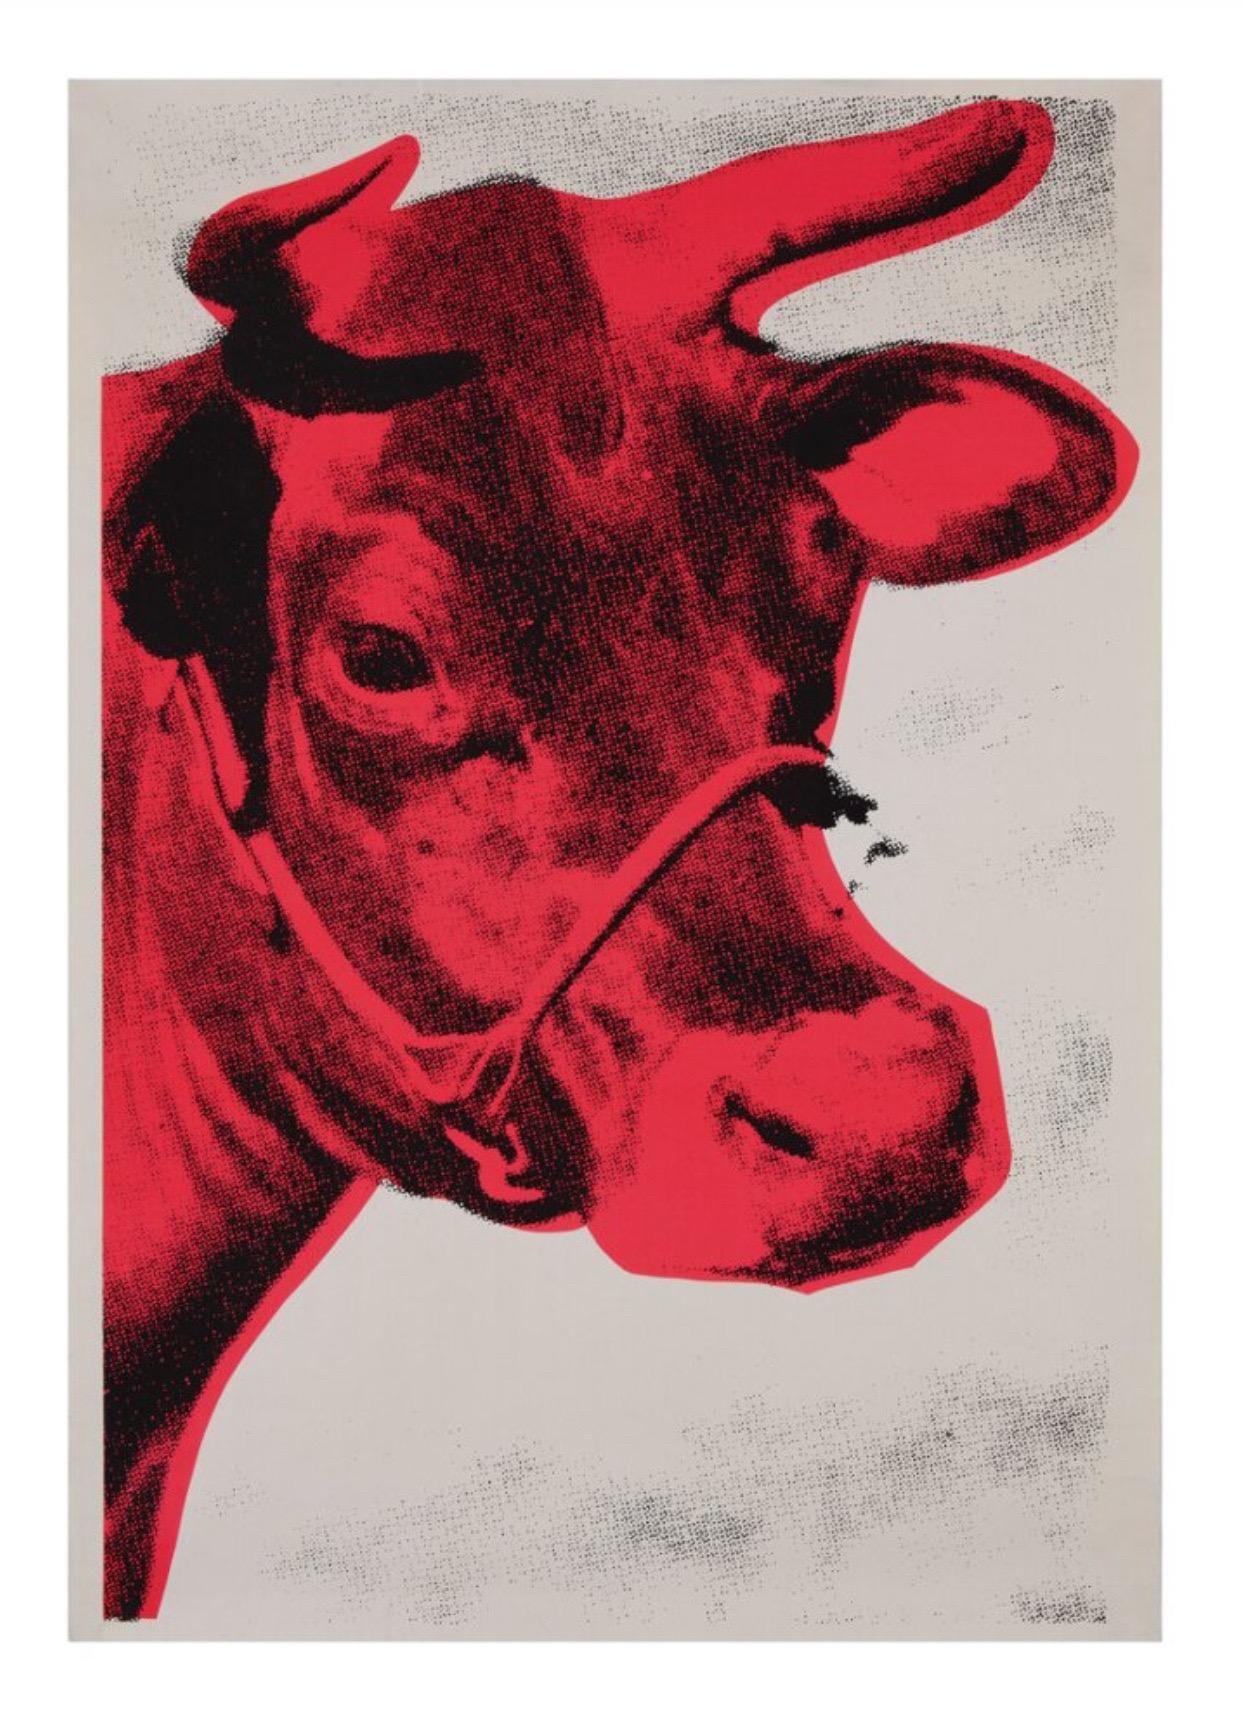 Andy Warhol, Kuh, 1967 Plakat 

Andys wunderschöne rote Kuh, die als großer Gicléedruck auf schwerem Aquarellpapier reproduziert wurde, macht sich in jedem Interieur hervorragend. 

Papierformat 70 x 100 cm (27,56 x 39,37 Zoll) 
Bildgröße 60 x 90 cm